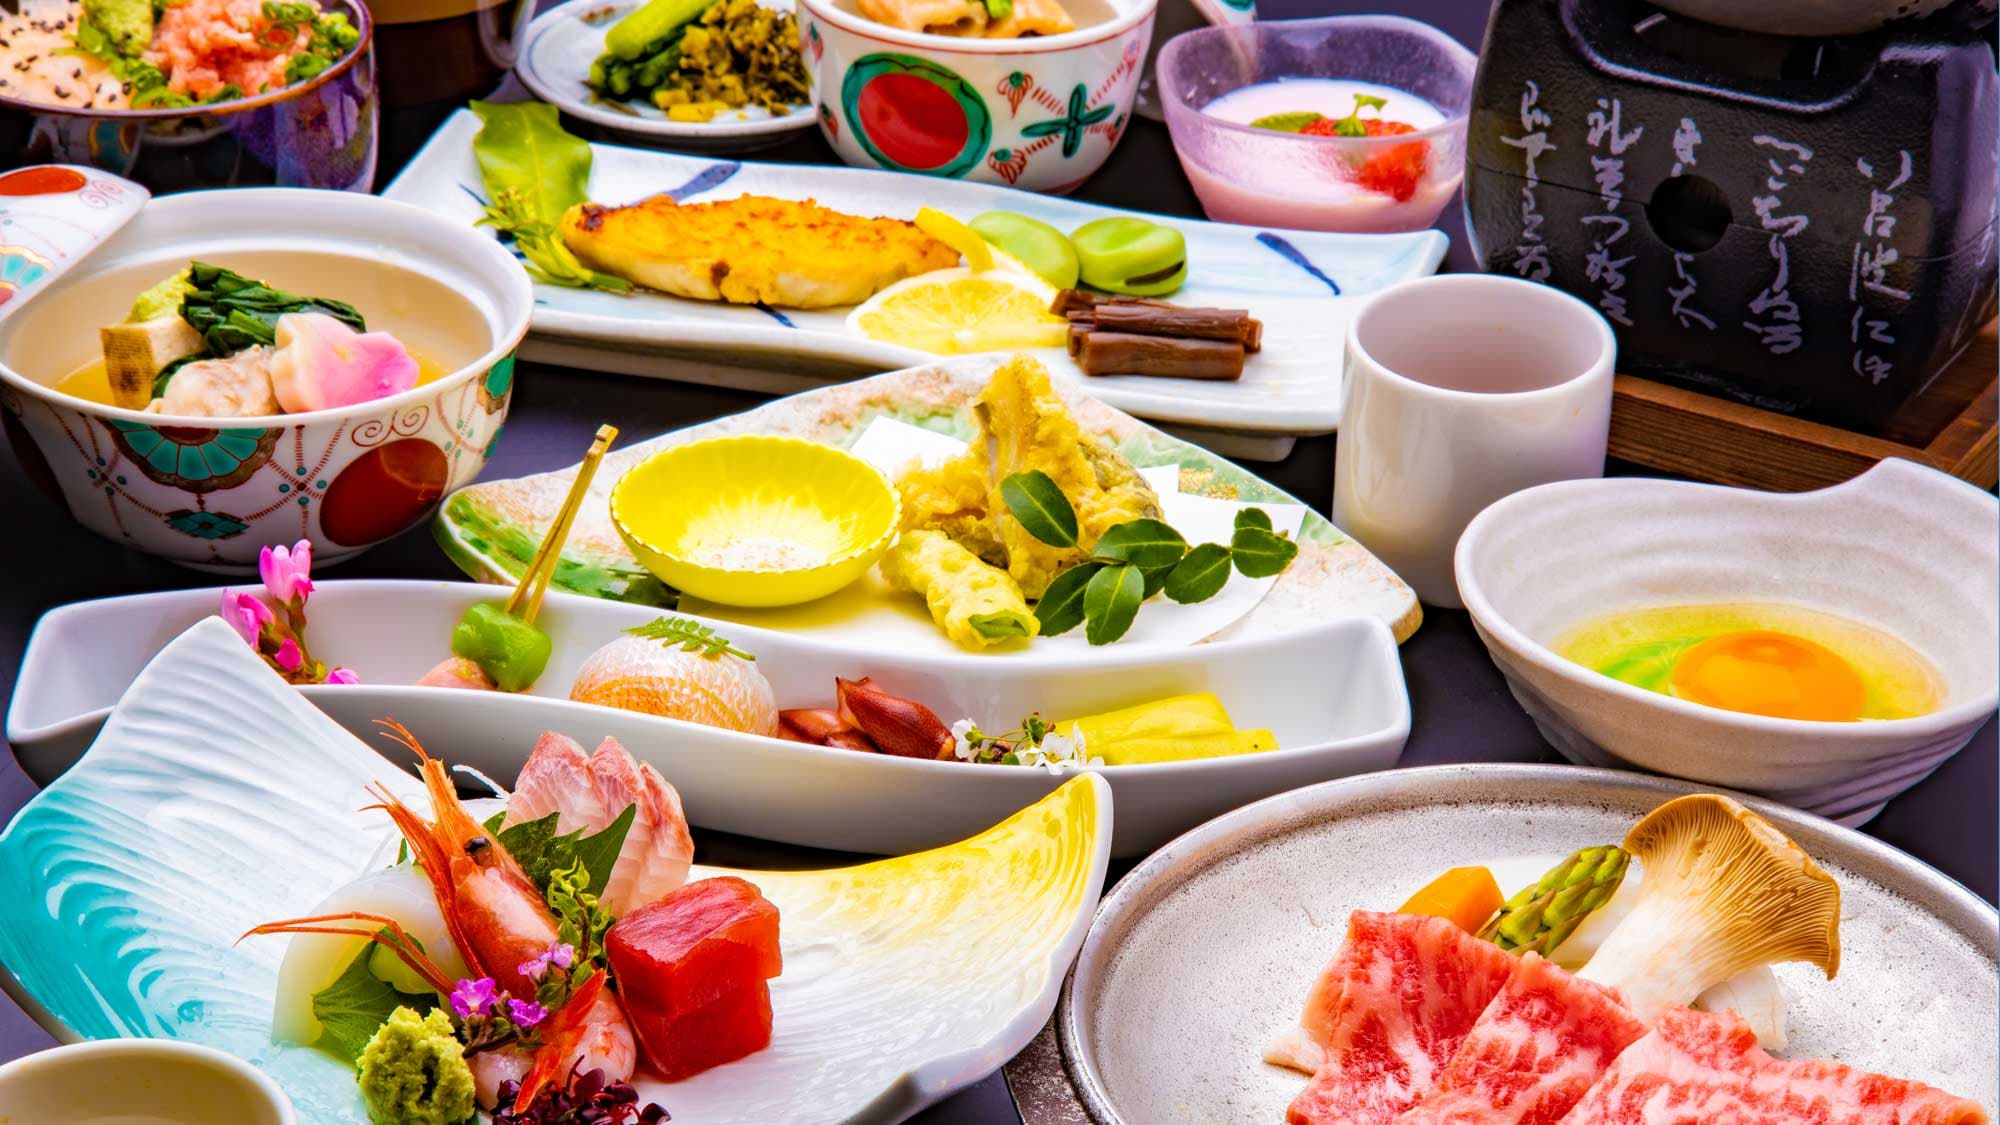 【삼색 해물 덮밥과 와규 야키 스키를 맛보는 회석】 합리적인 가격으로 일본해의 제철과 와규를 제대로 즐길 수있는 인기 모임